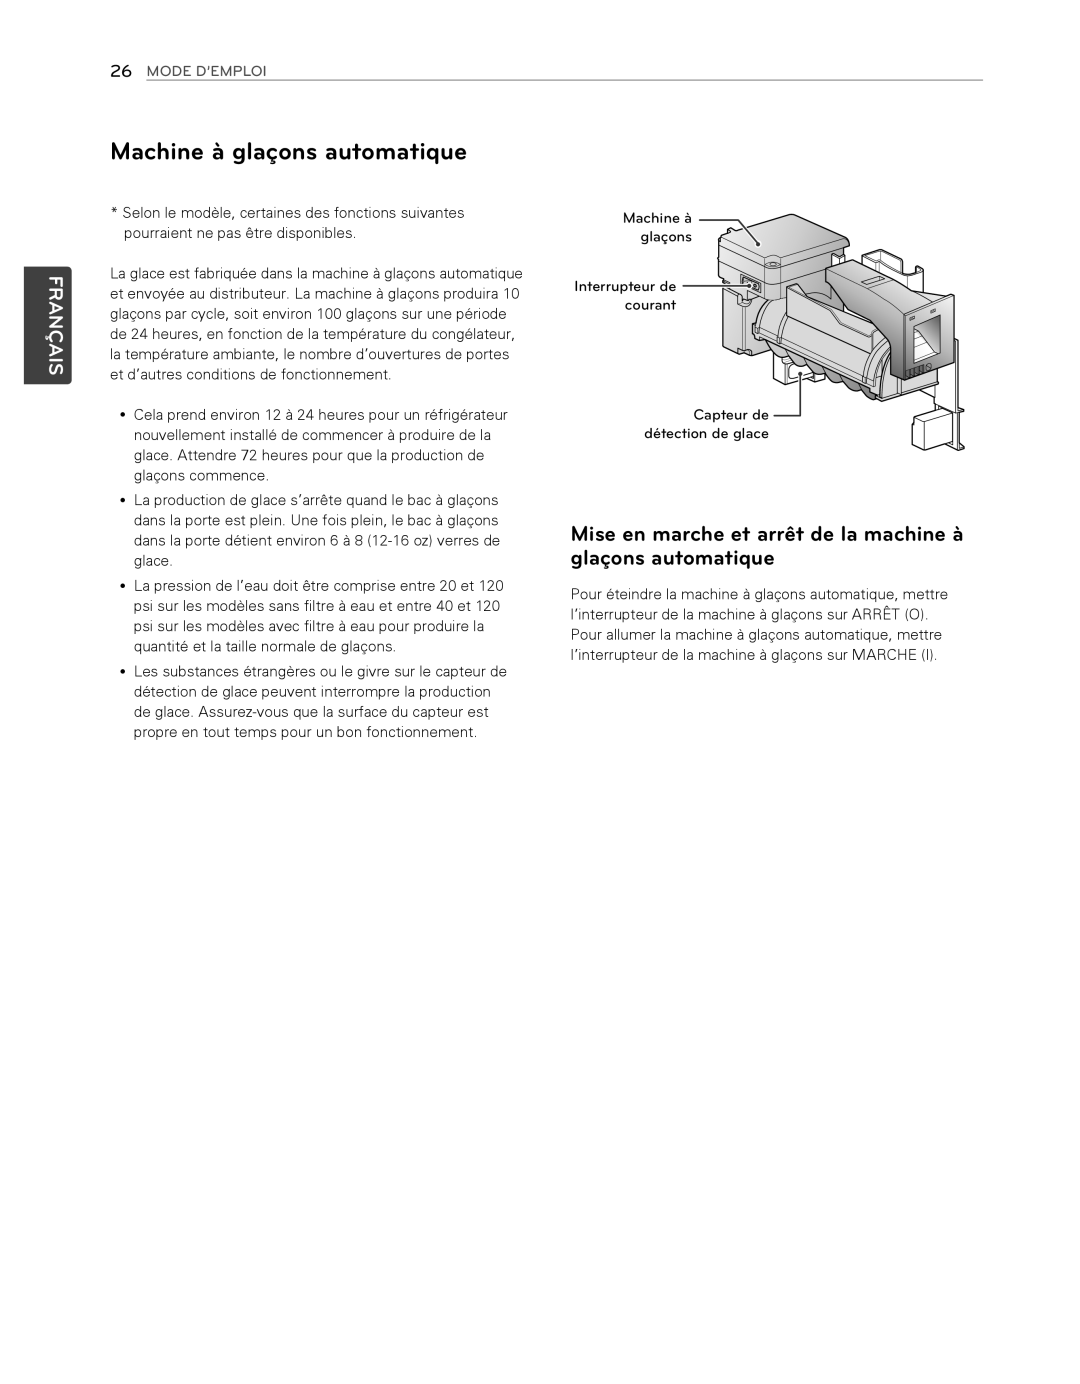 LG Electronics LFX25974SB, LFX25974ST owner manual Machine à glaçons automatique, Français, 26MODE D’EMPLOI 